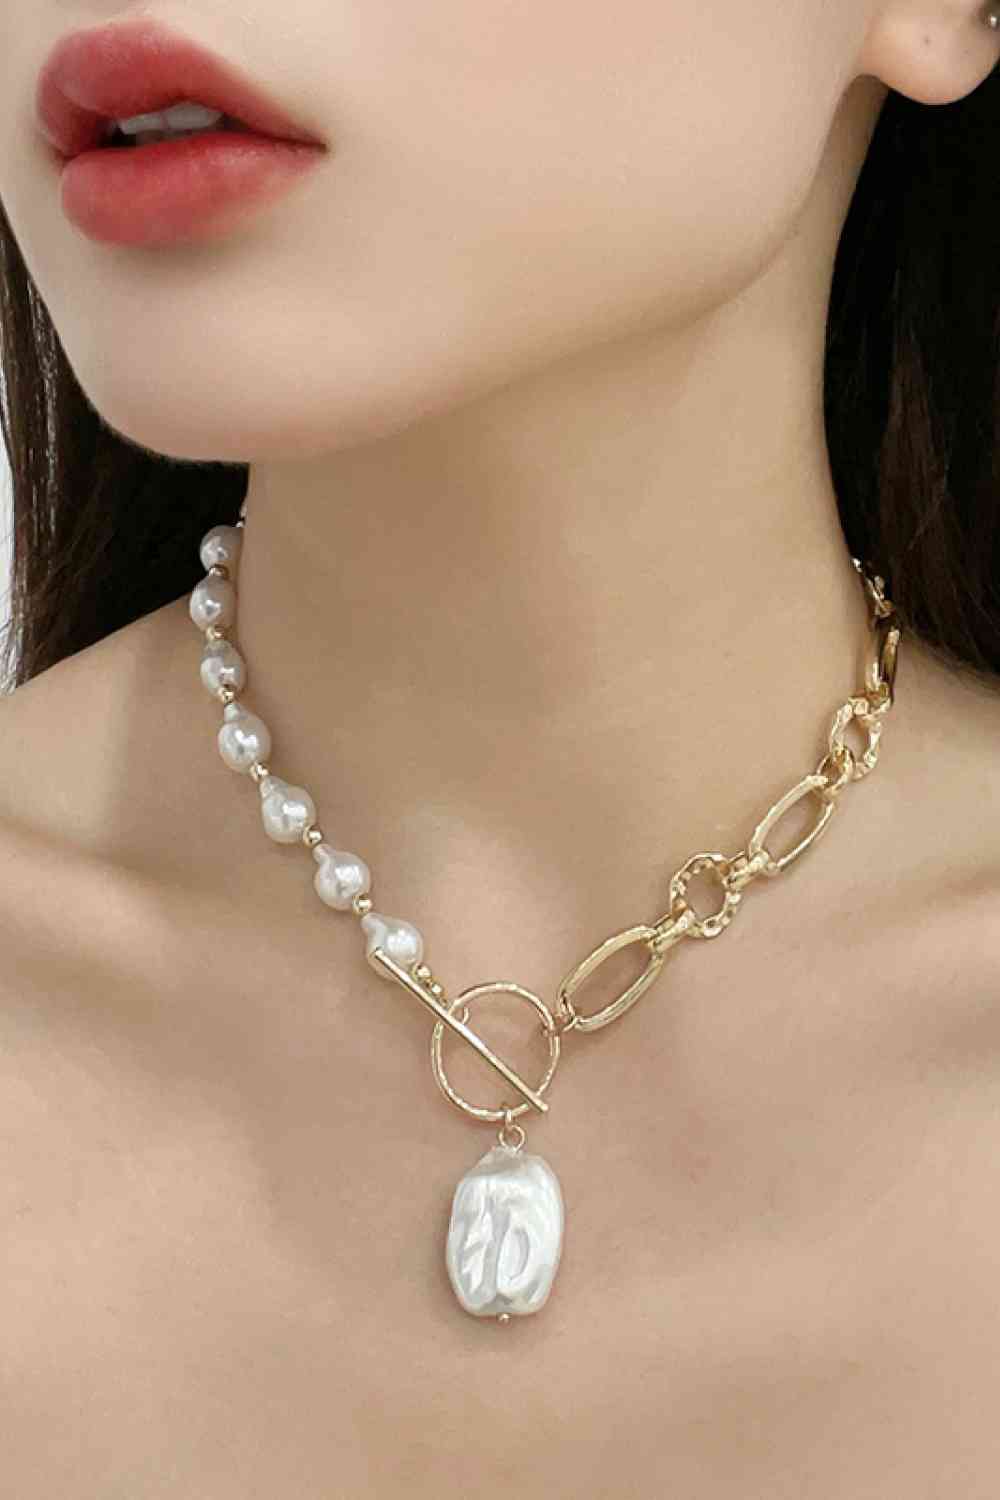 Halskette mit halber Perle, halber Kette und Knebelverschluss